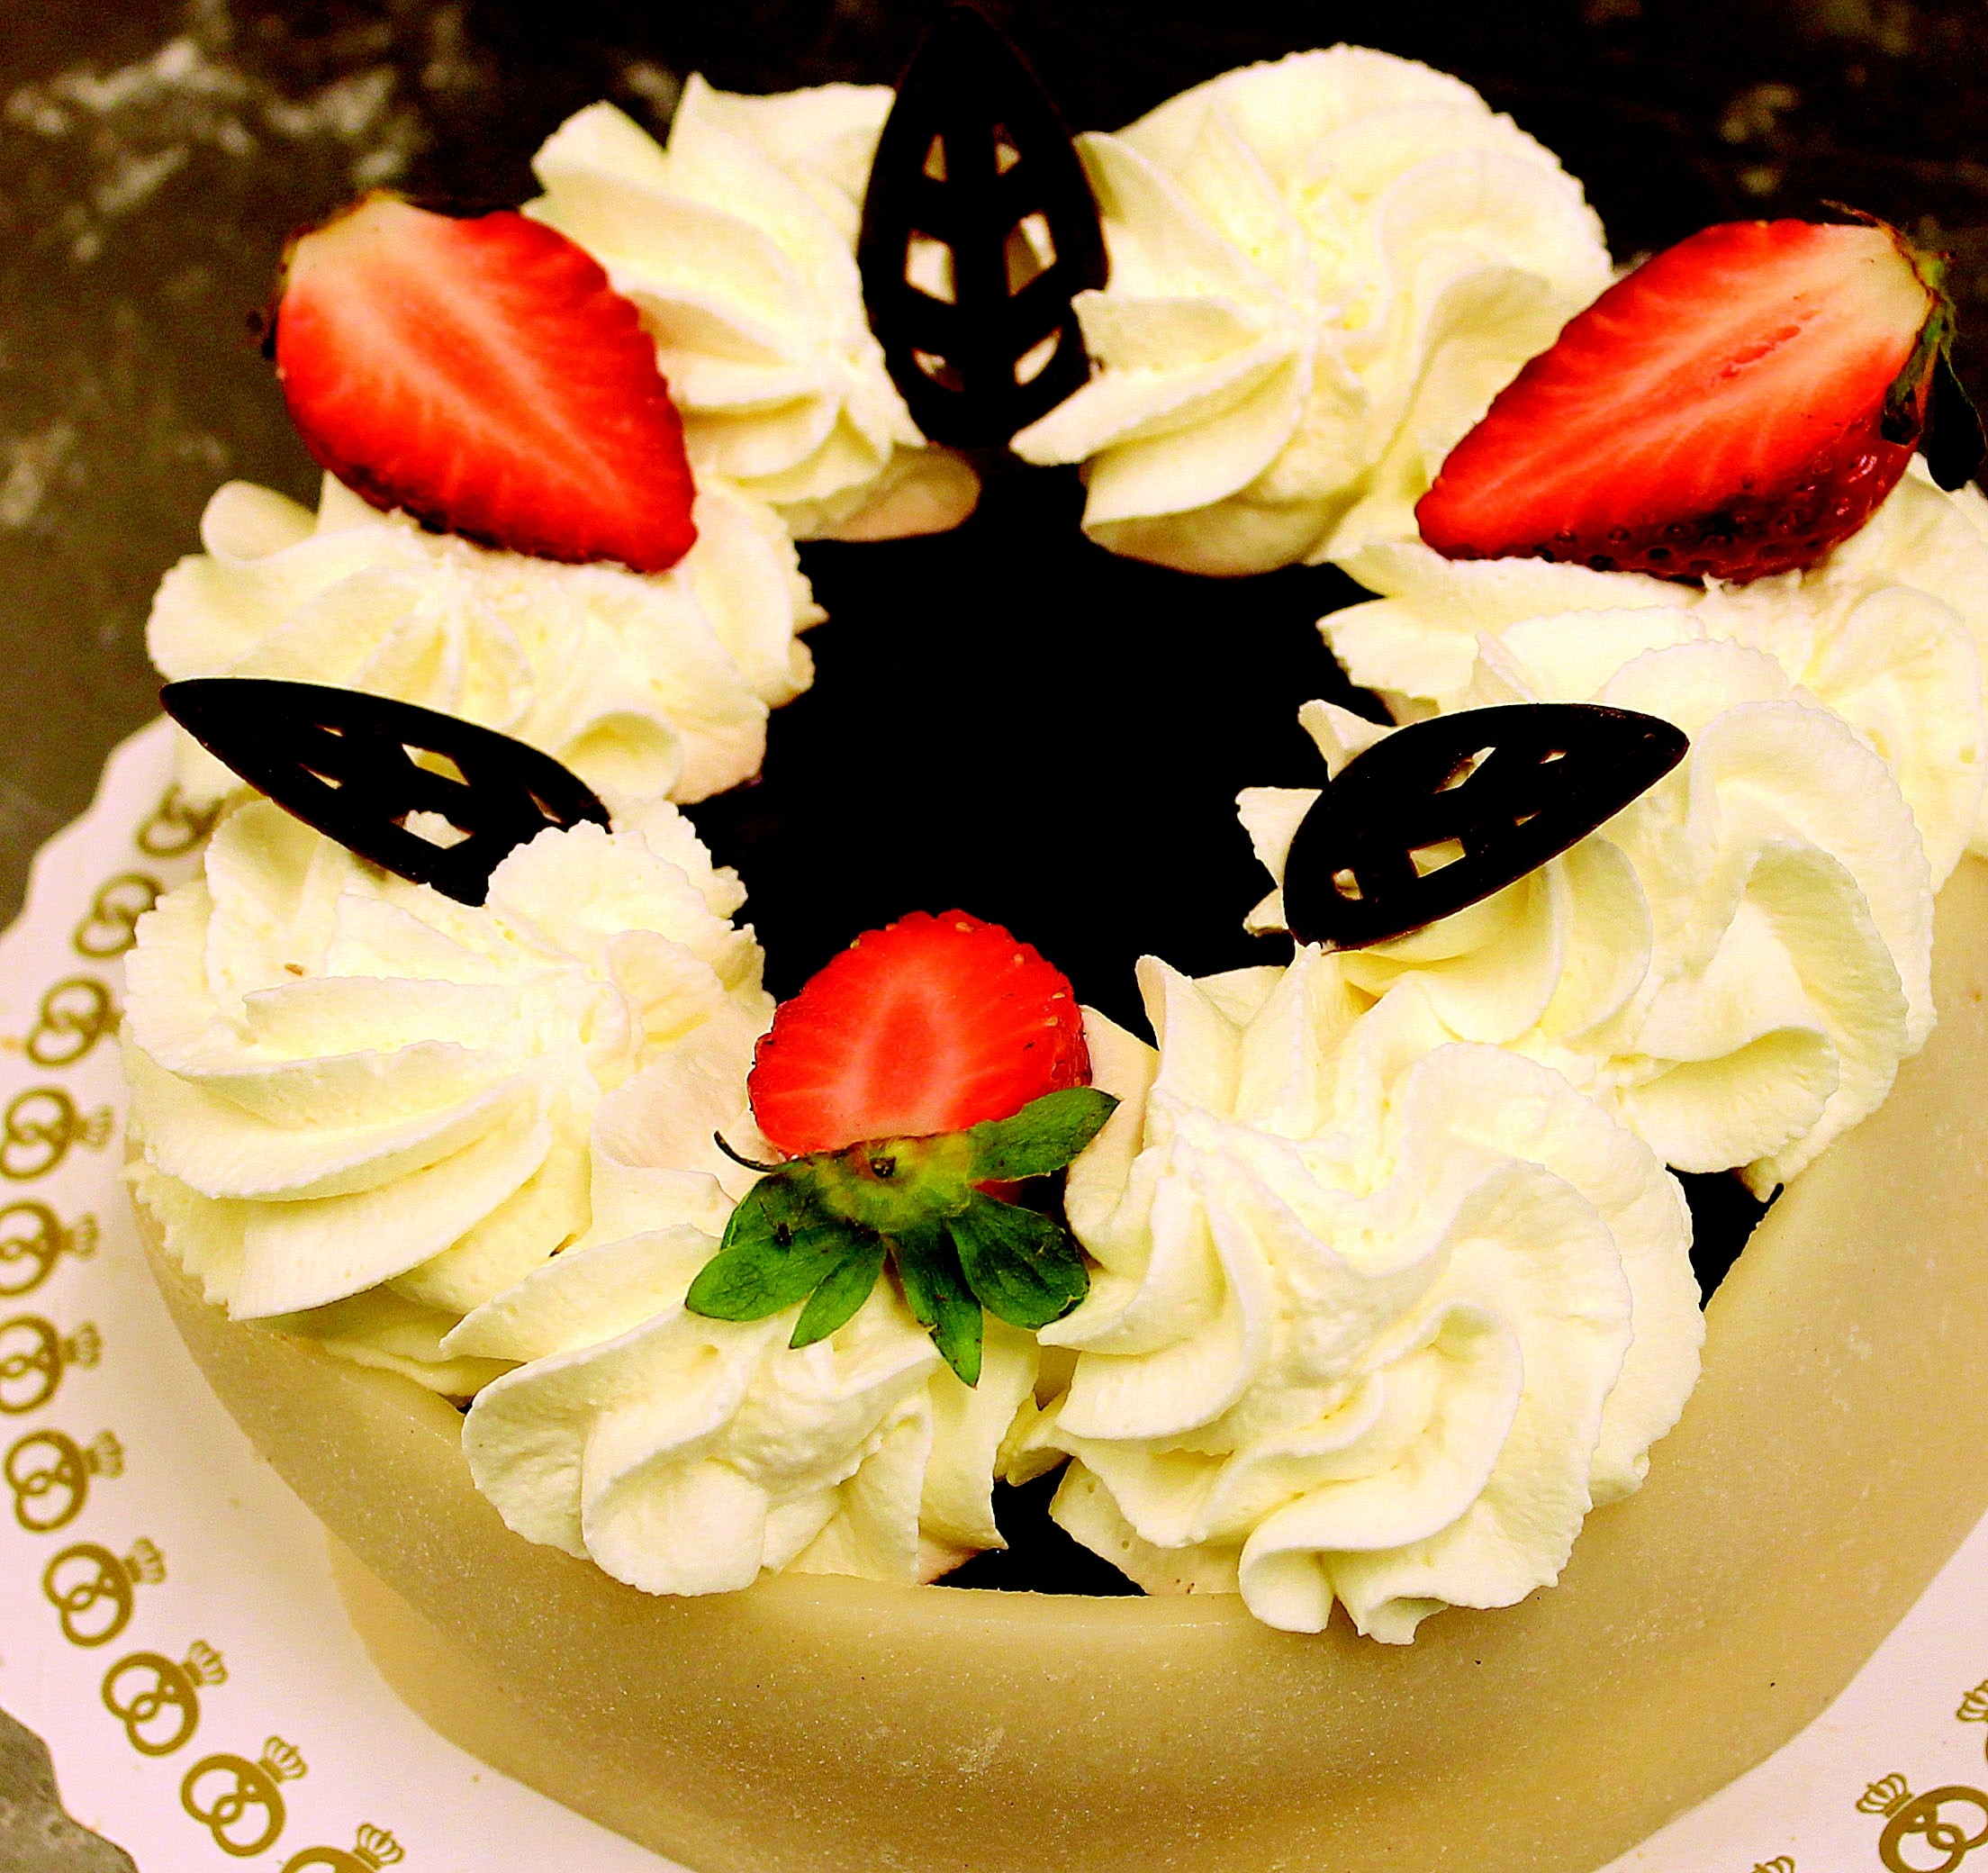 vanilla chocolate cake with strawberries